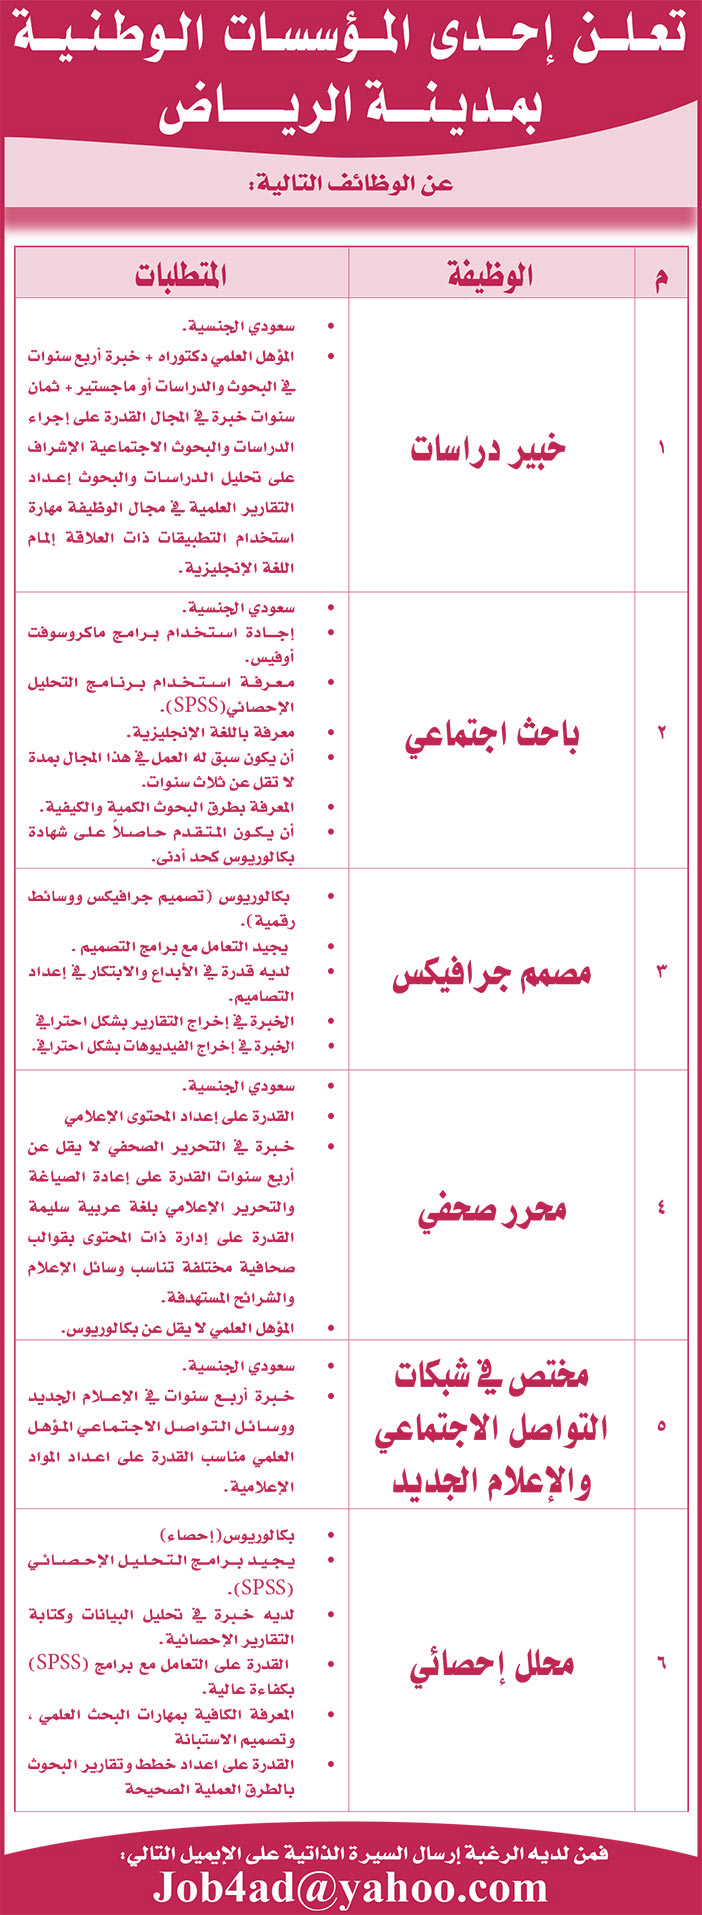 تعلن إحدى المؤسسات الوطنية بمدينة الرياض عن الوظائف التالية 